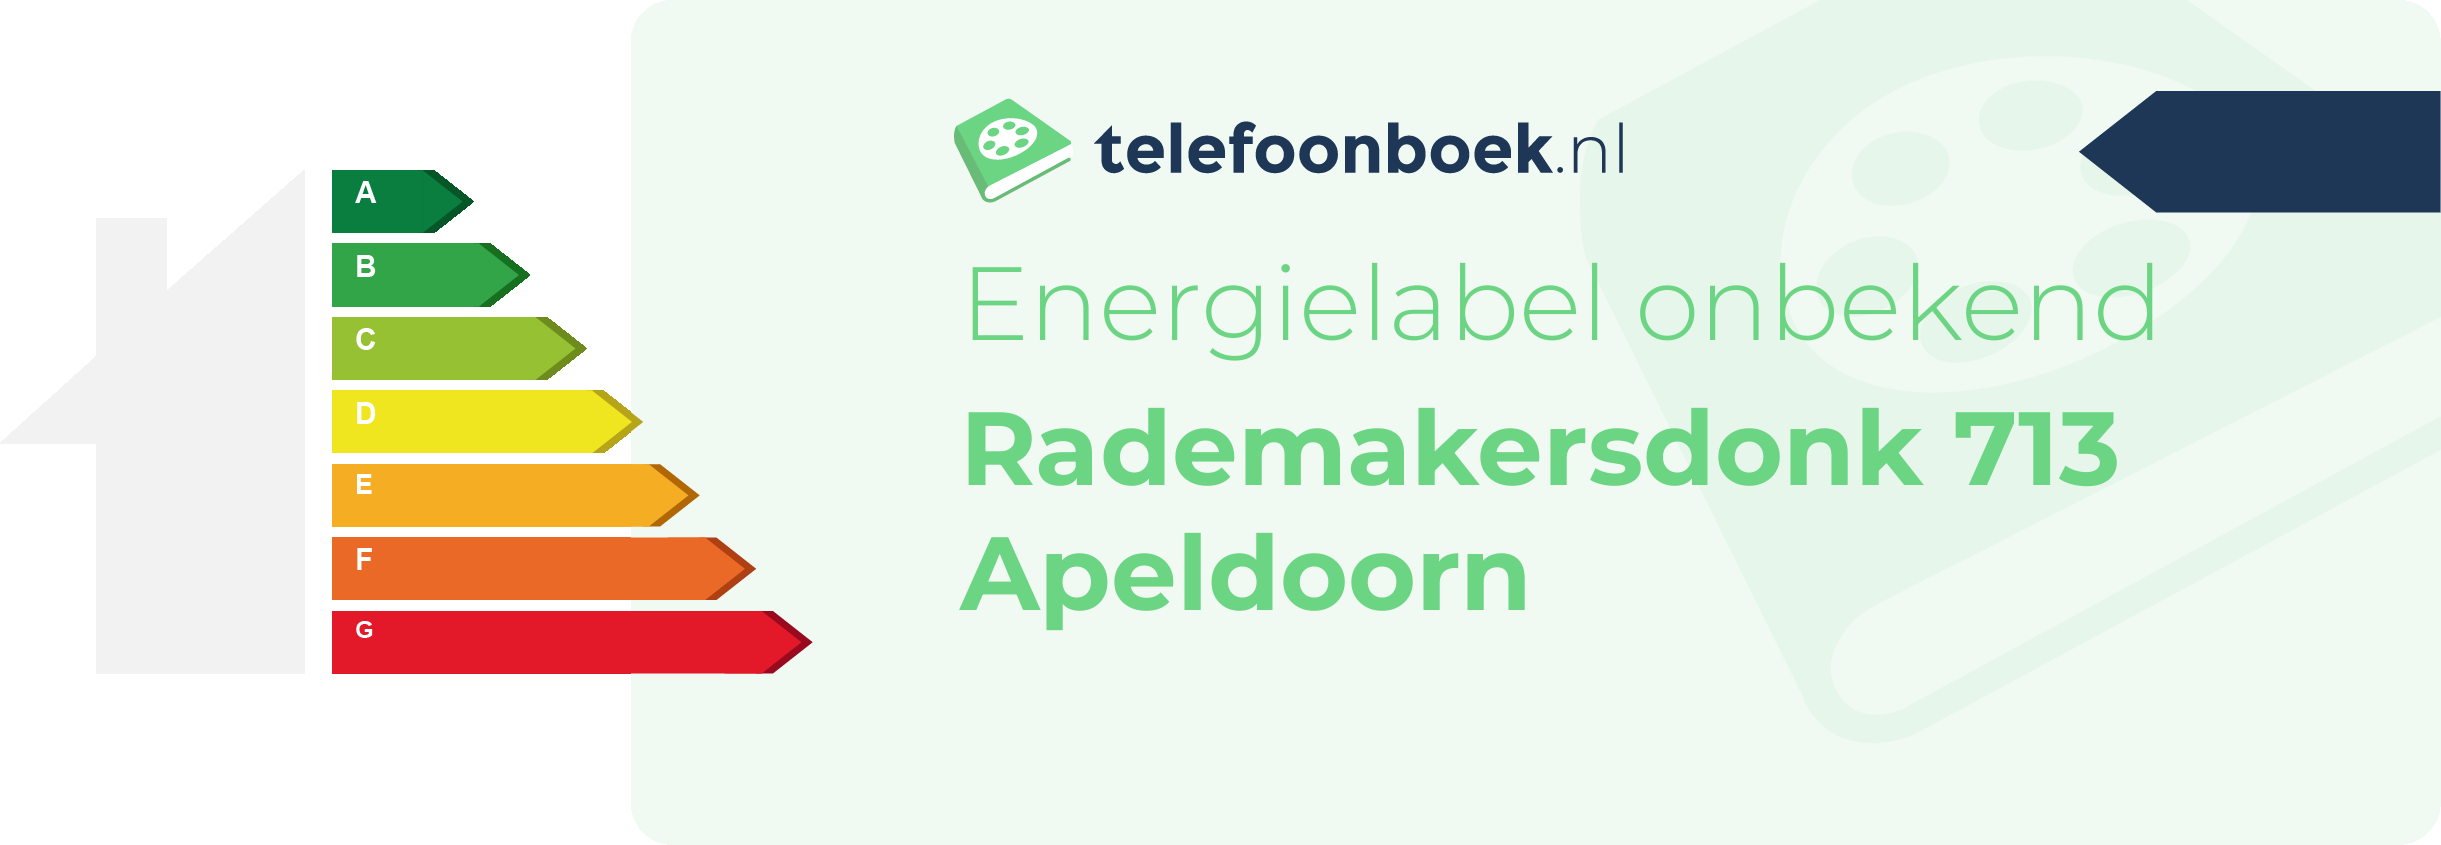 Energielabel Rademakersdonk 713 Apeldoorn